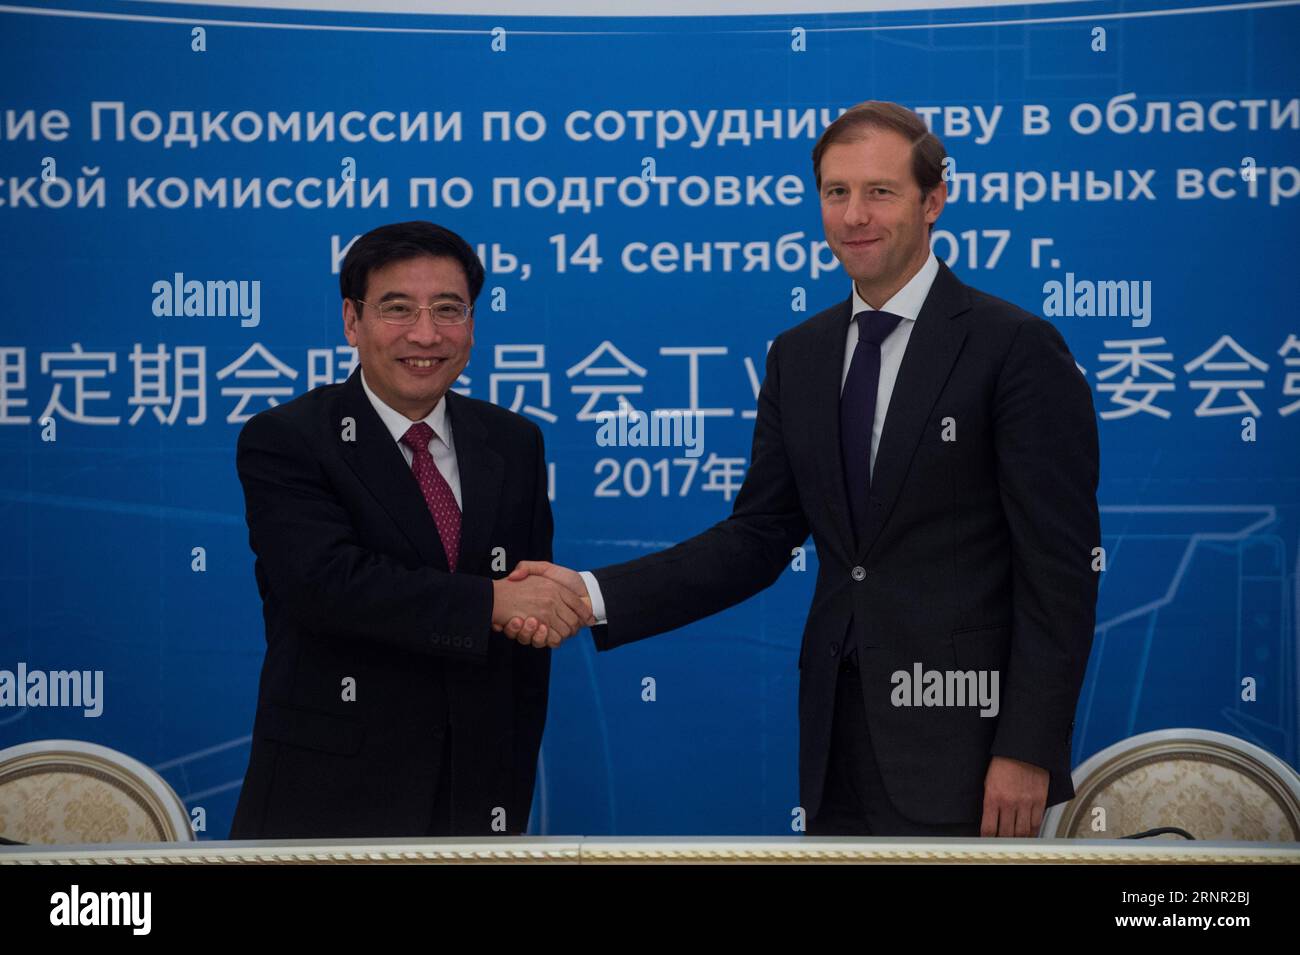 (170915) -- KAZAN, 15 settembre 2017 -- il ministro cinese dell'industria e della tecnologia dell'informazione Miao Wei (L) e il ministro russo dell'industria e del commercio Denis Manturov si stringono la mano durante una riunione ministeriale a Kazan, Russia, 14 settembre 2017. La Cina e la Russia hanno tenuto una riunione ministeriale qui giovedì per discutere ulteriori cooperazione nei settori industriale e high-tech. ) (Djj) COOPERAZIONE INDUSTRIALE RUSSIA-KAZAN-CINA EvgenyxSinitsyn PUBLICATIONxNOTxINxCHN Foto Stock